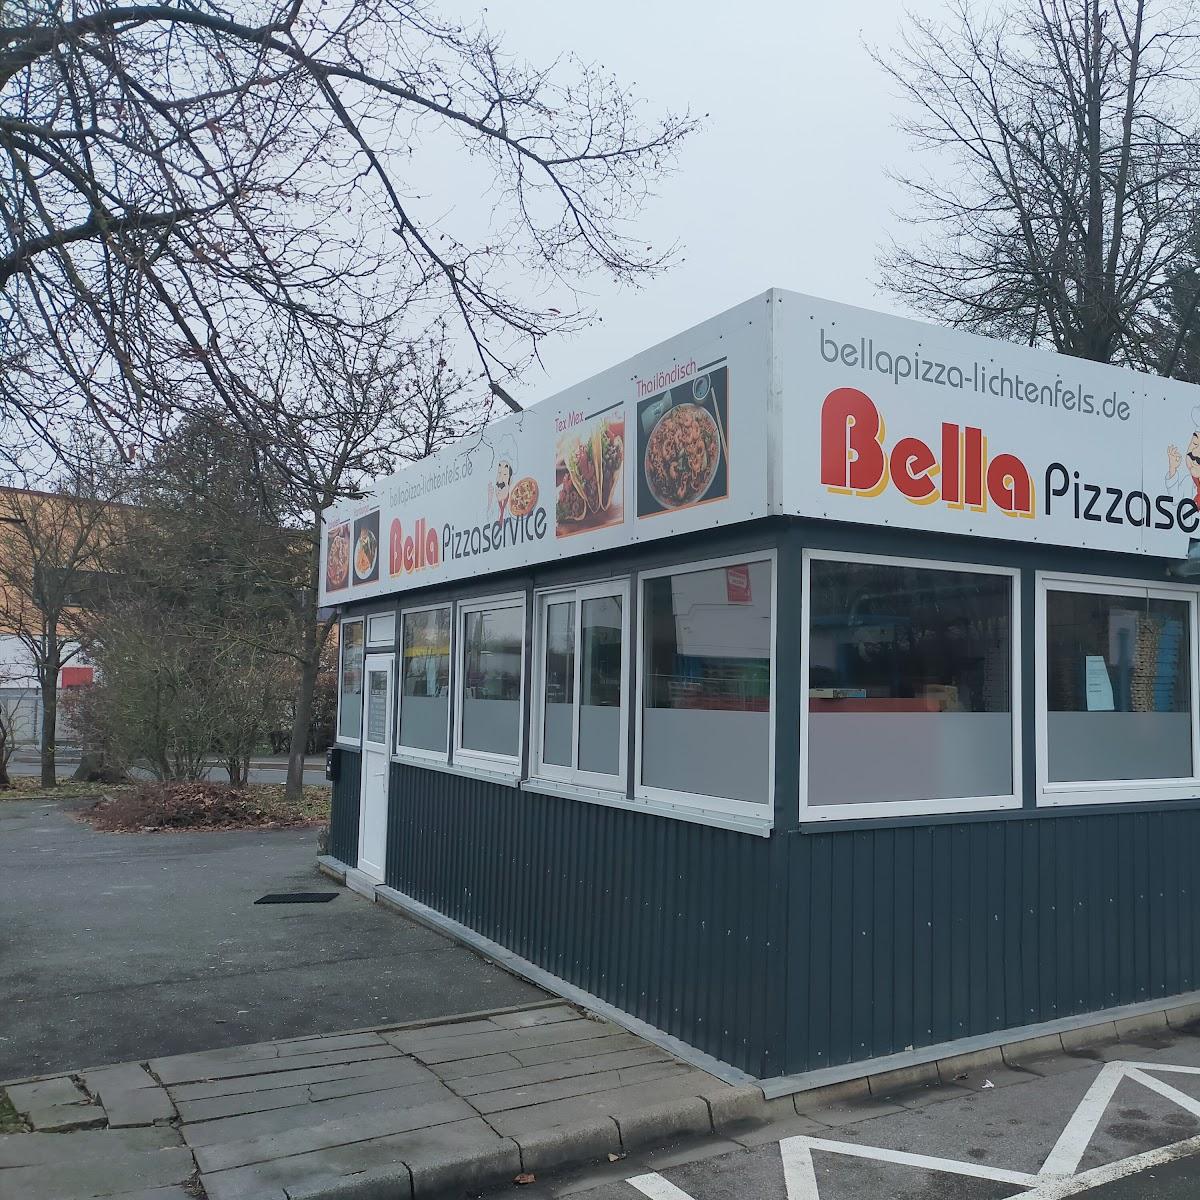 Restaurant "Bella Pizza" in Lichtenfels